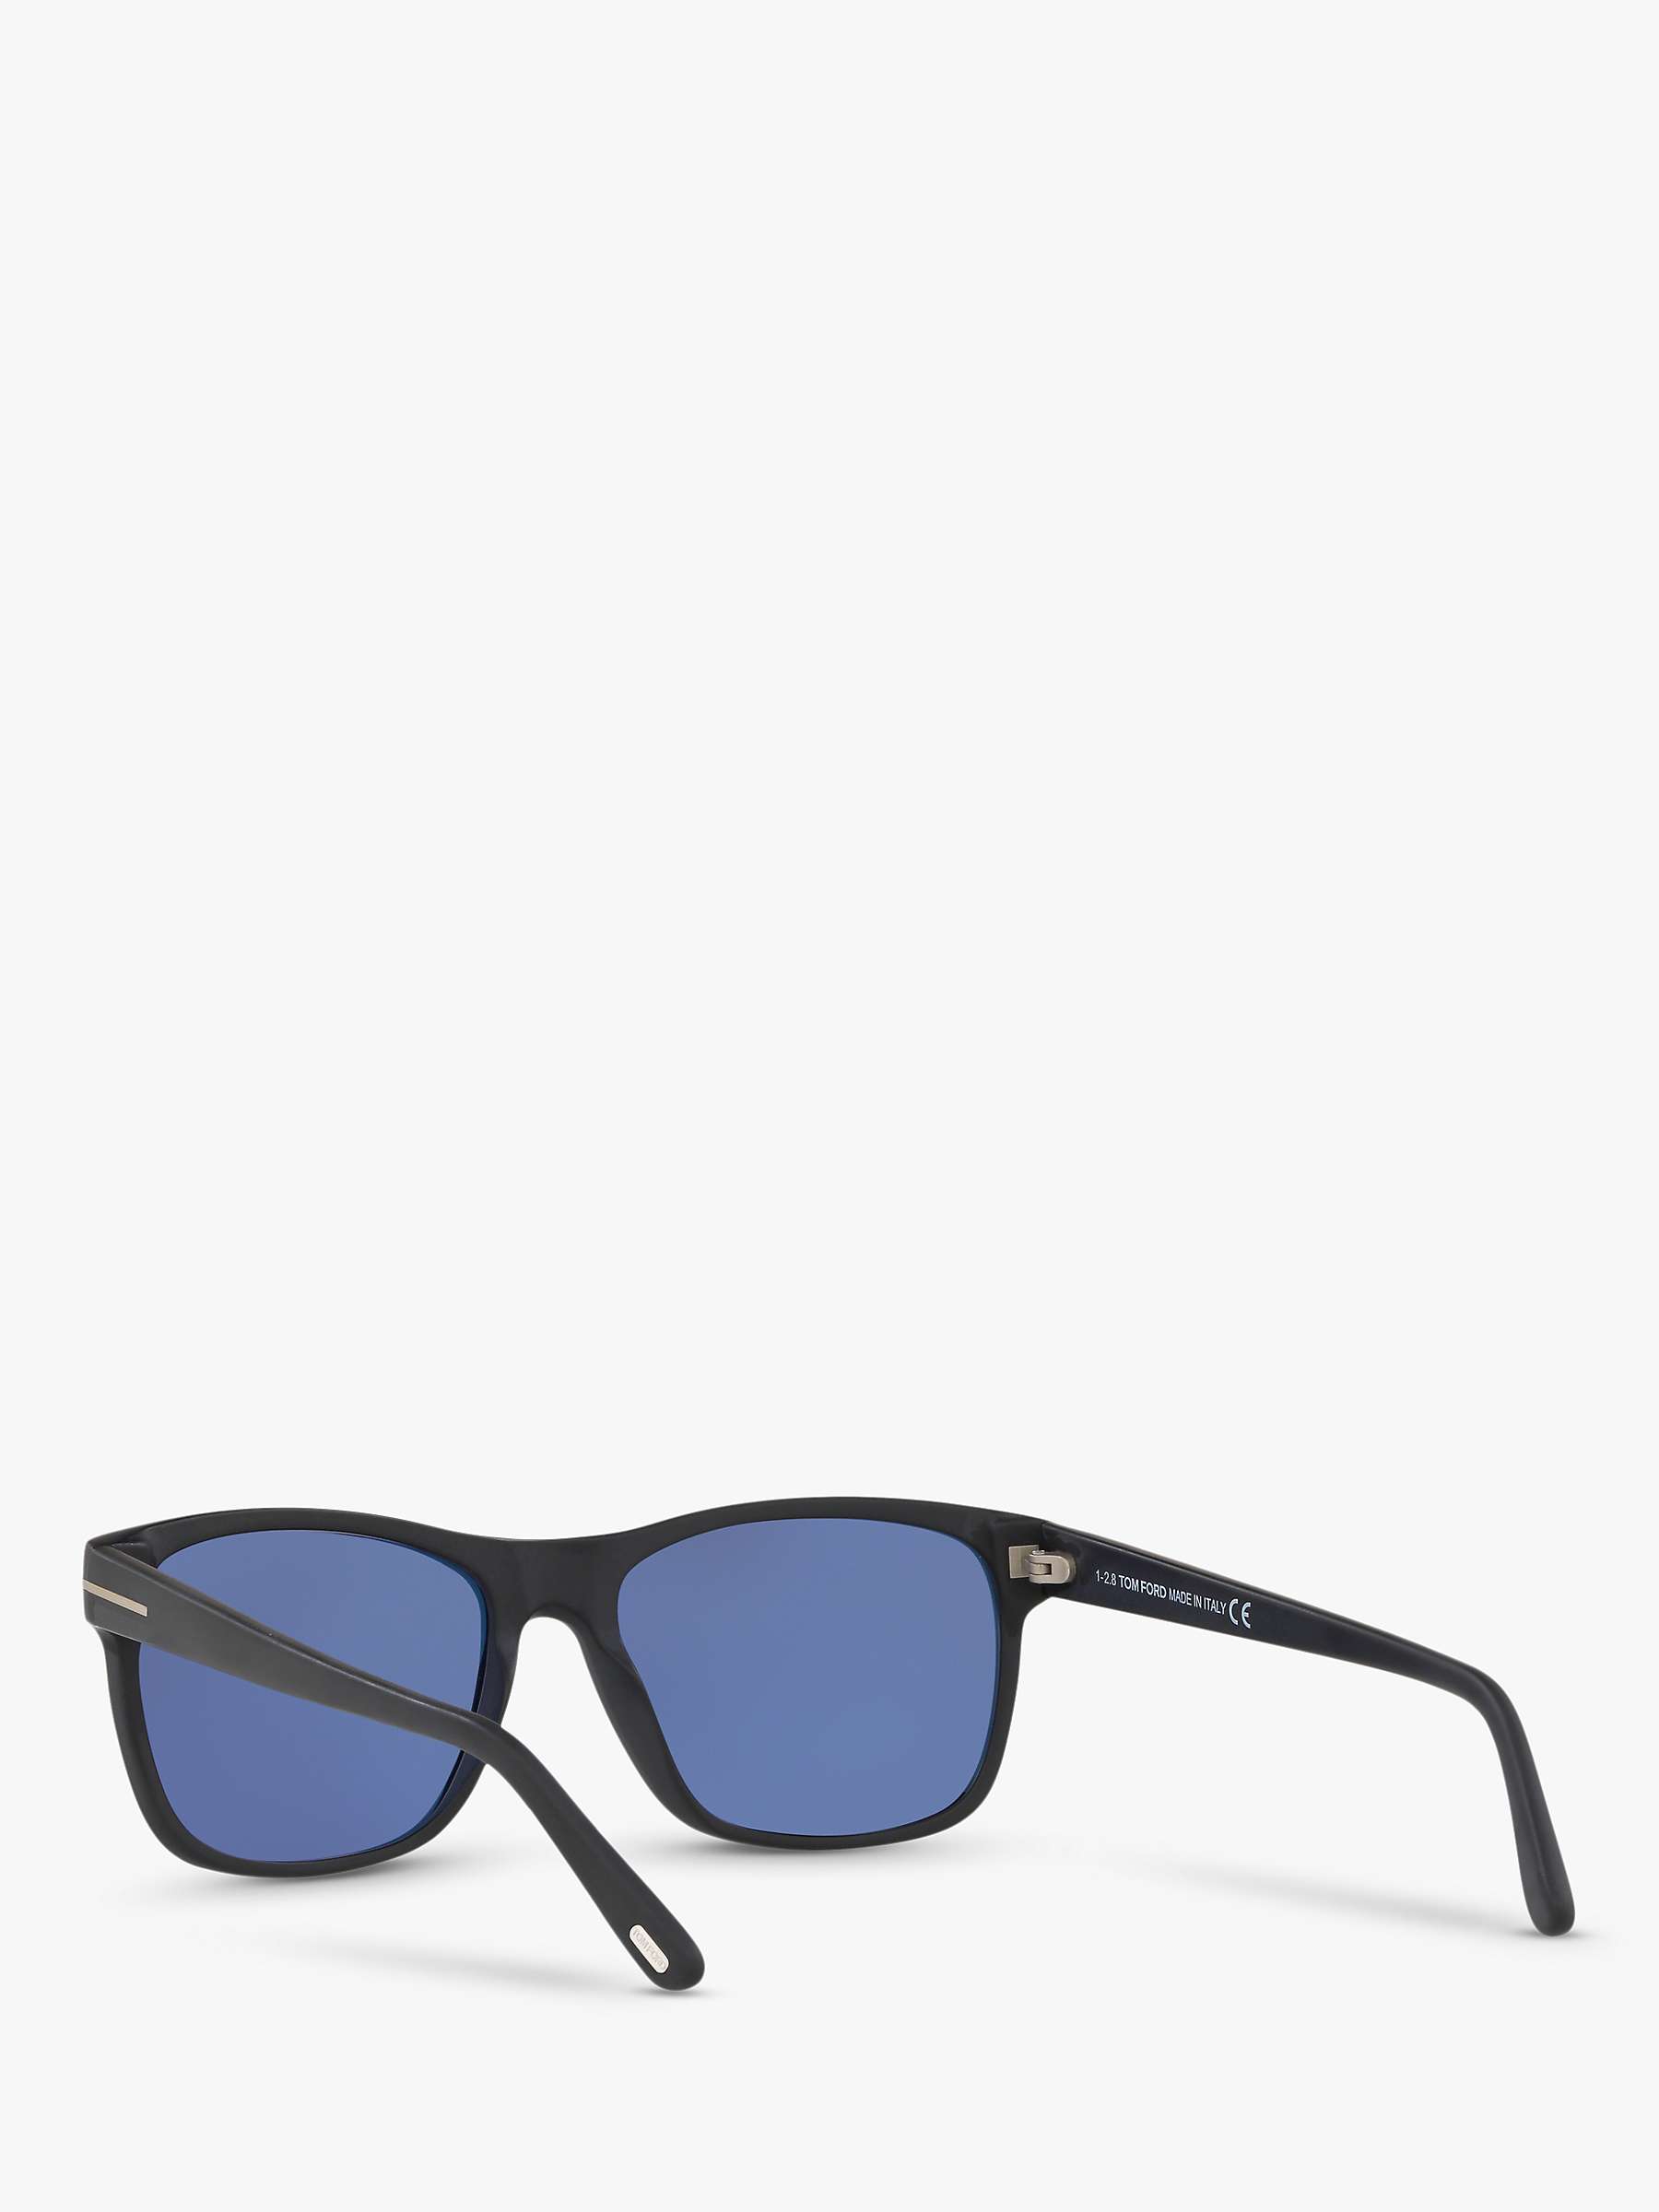 Buy TOM FORD FT0698 Men's Giulio Polarised Square Sunglasses Online at johnlewis.com